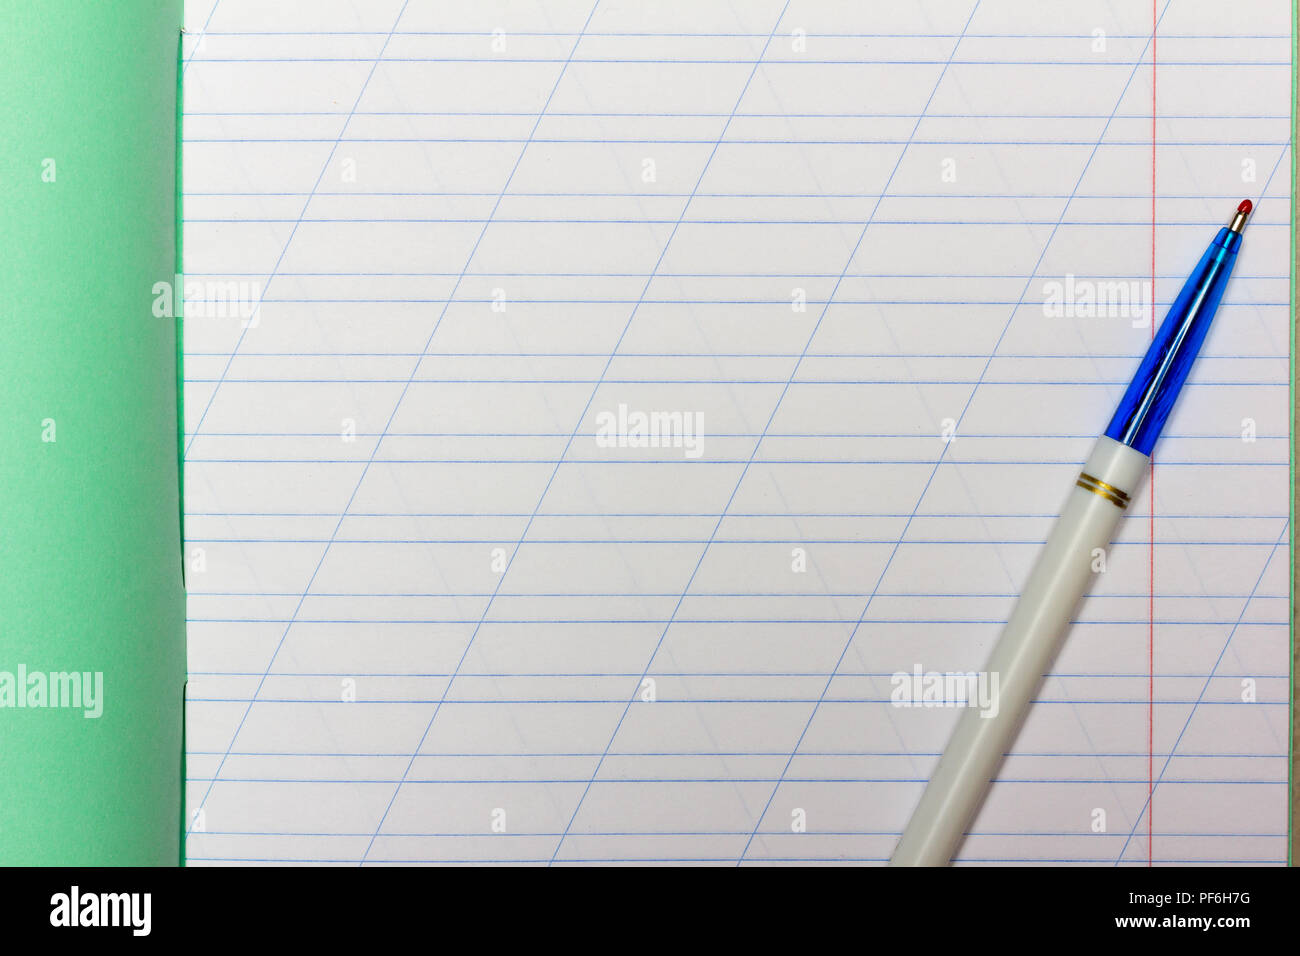 Scuola aperta notebook in una stretta linea con una barra per imparare l'ortografia mock up con spazio copia e penna a sfera, vista dall'alto Foto Stock